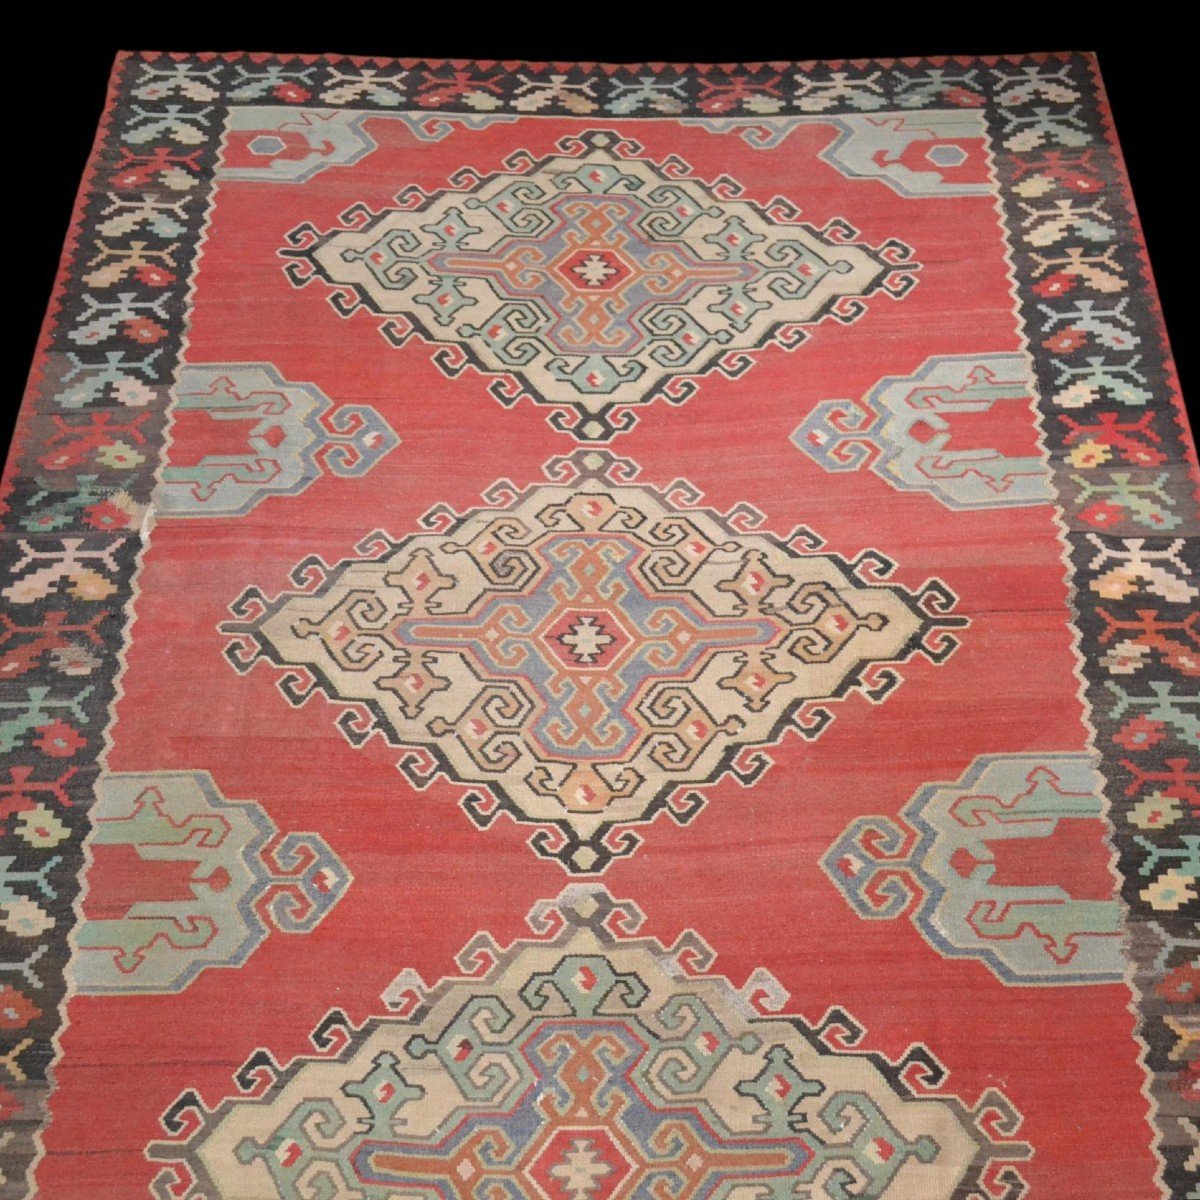 Important et lourd Kilim, 258 cm x 350 cm, laine vers 1960/1970, Anatolie, Turquie, très beau